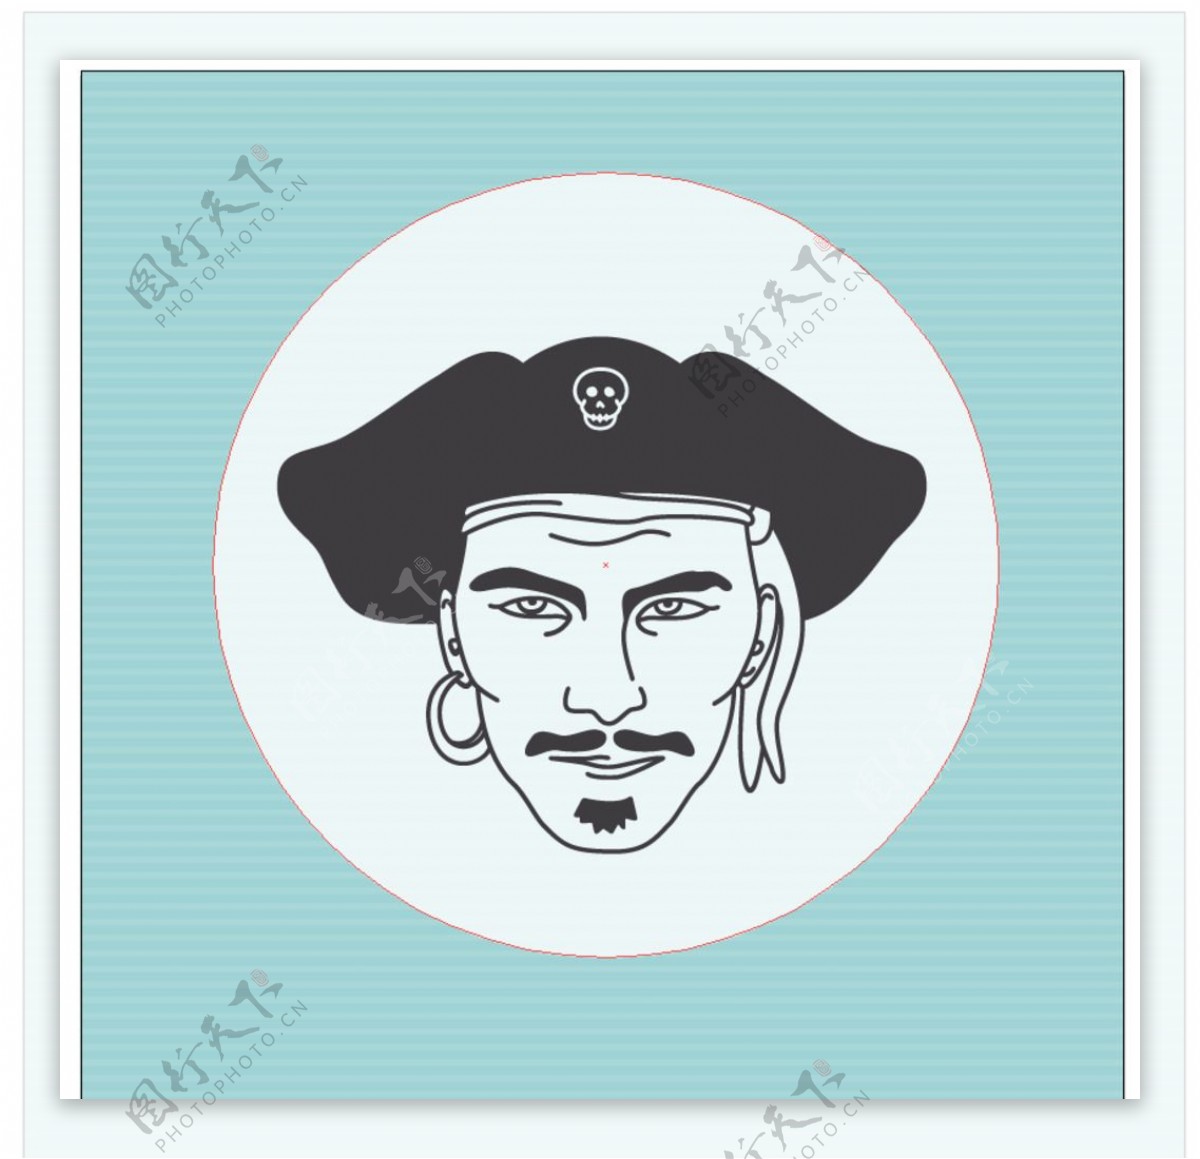 绘制的海盗肖像